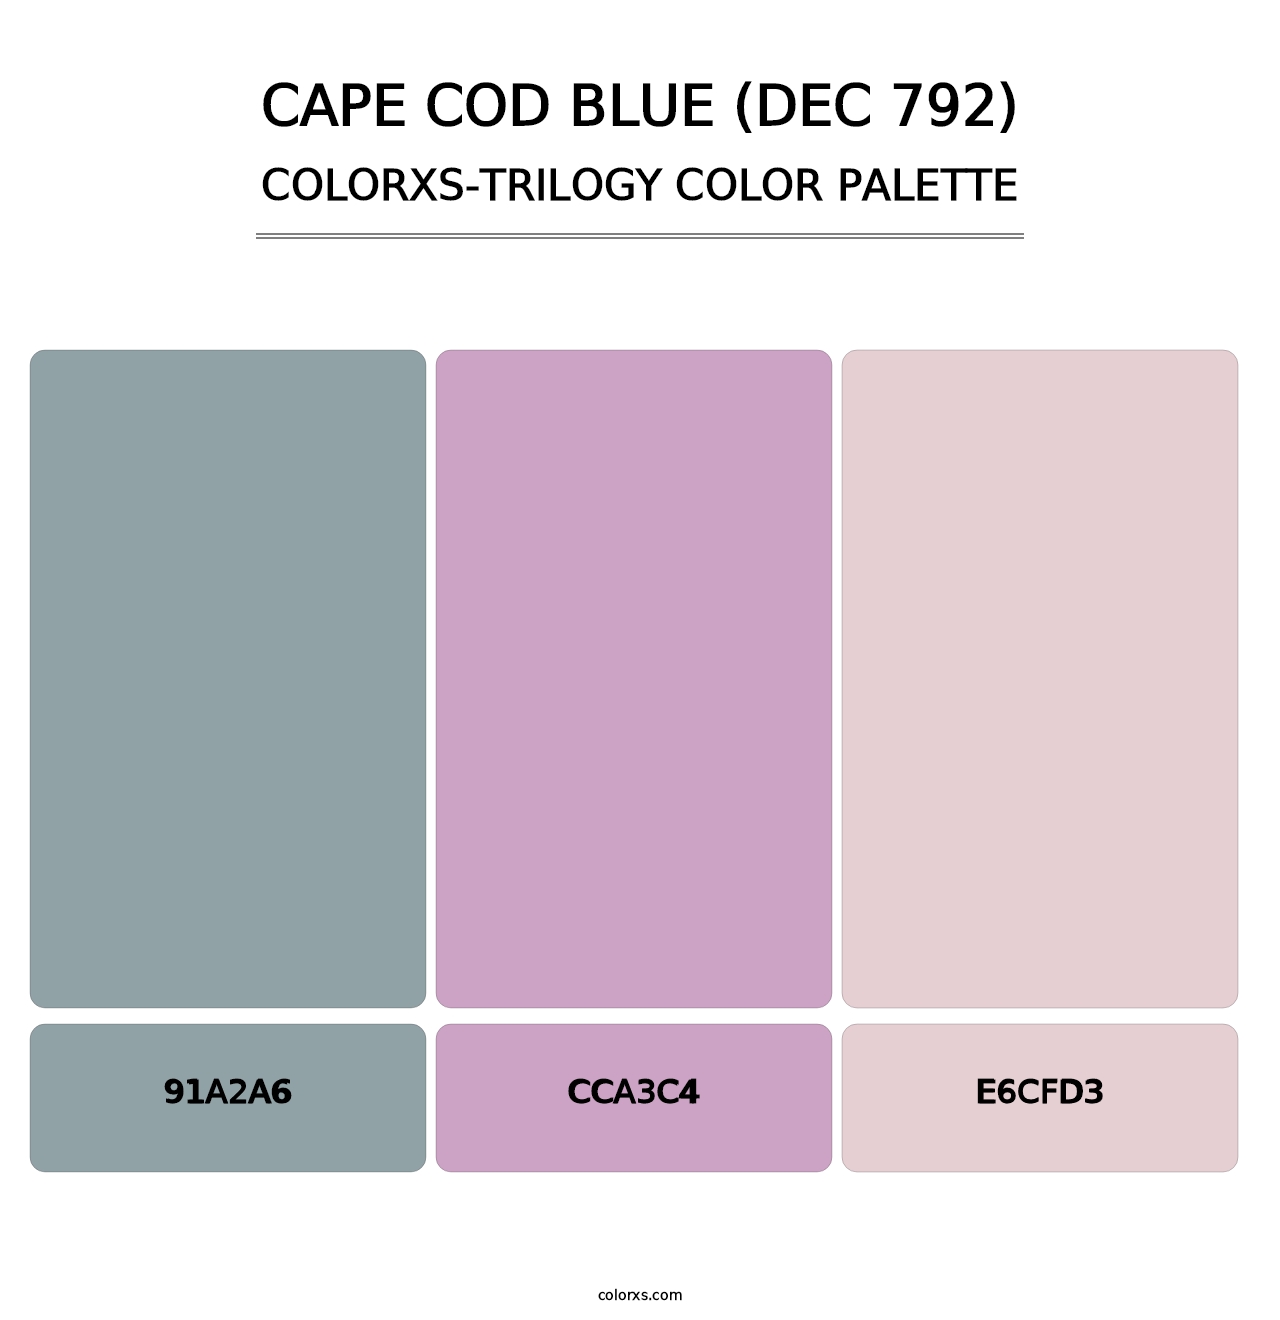 Cape Cod Blue (DEC 792) - Colorxs Trilogy Palette